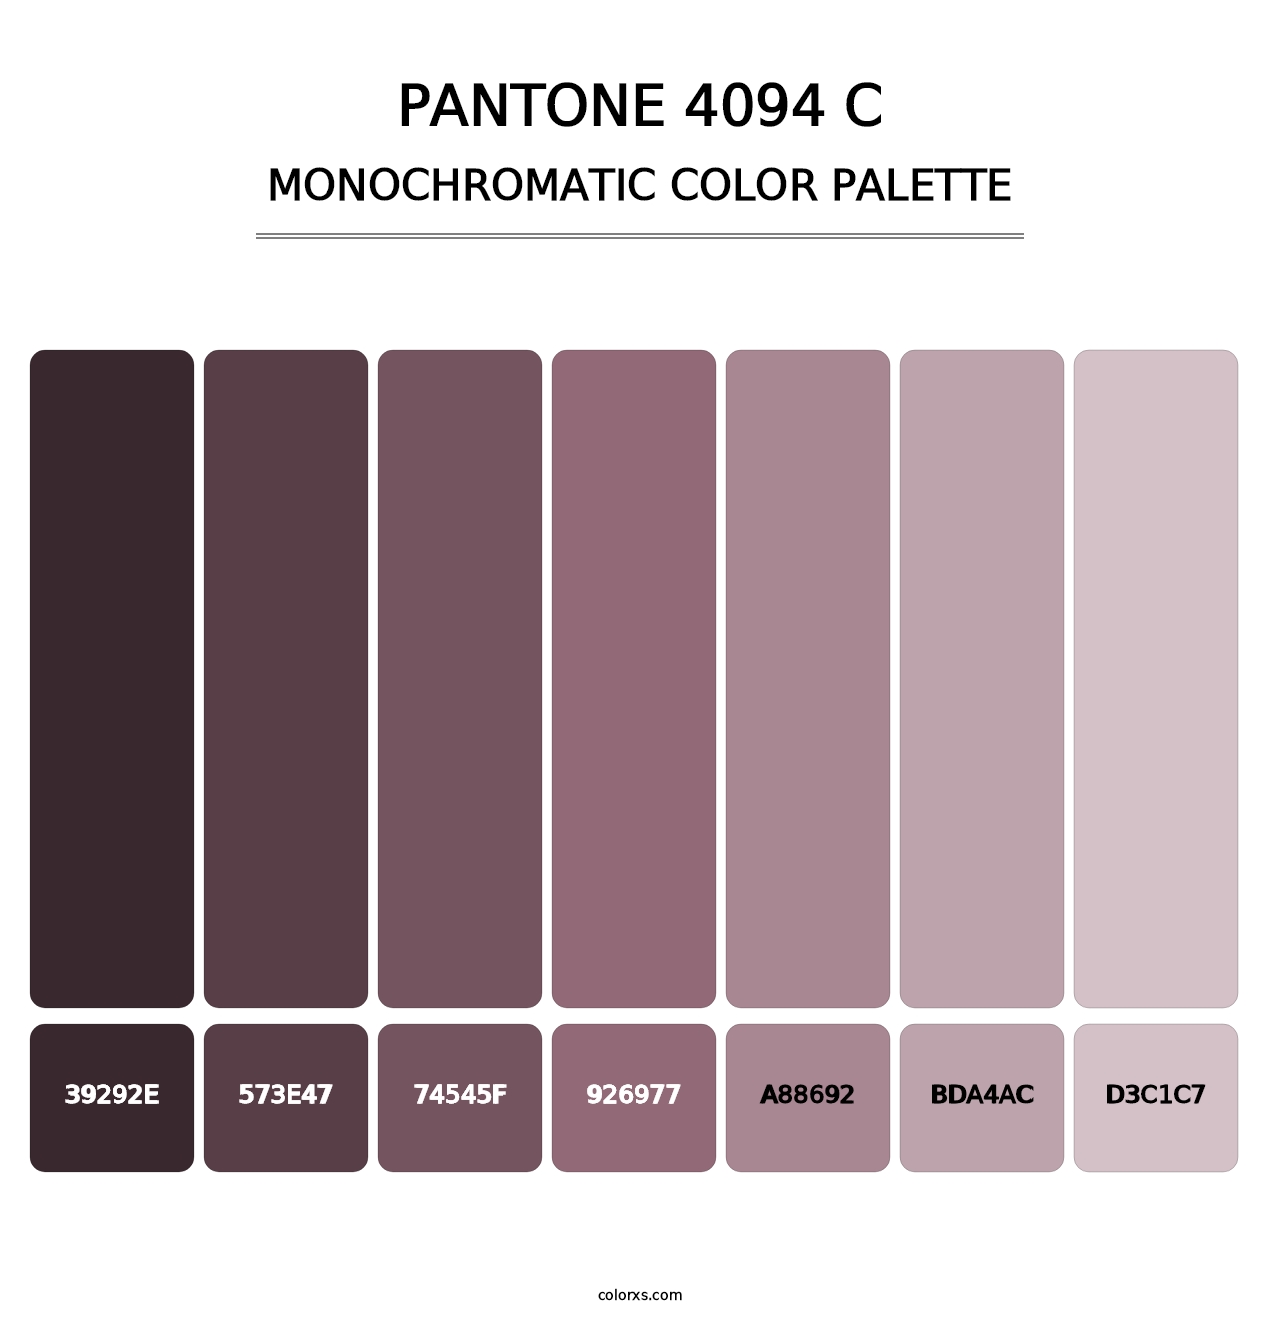 PANTONE 4094 C - Monochromatic Color Palette